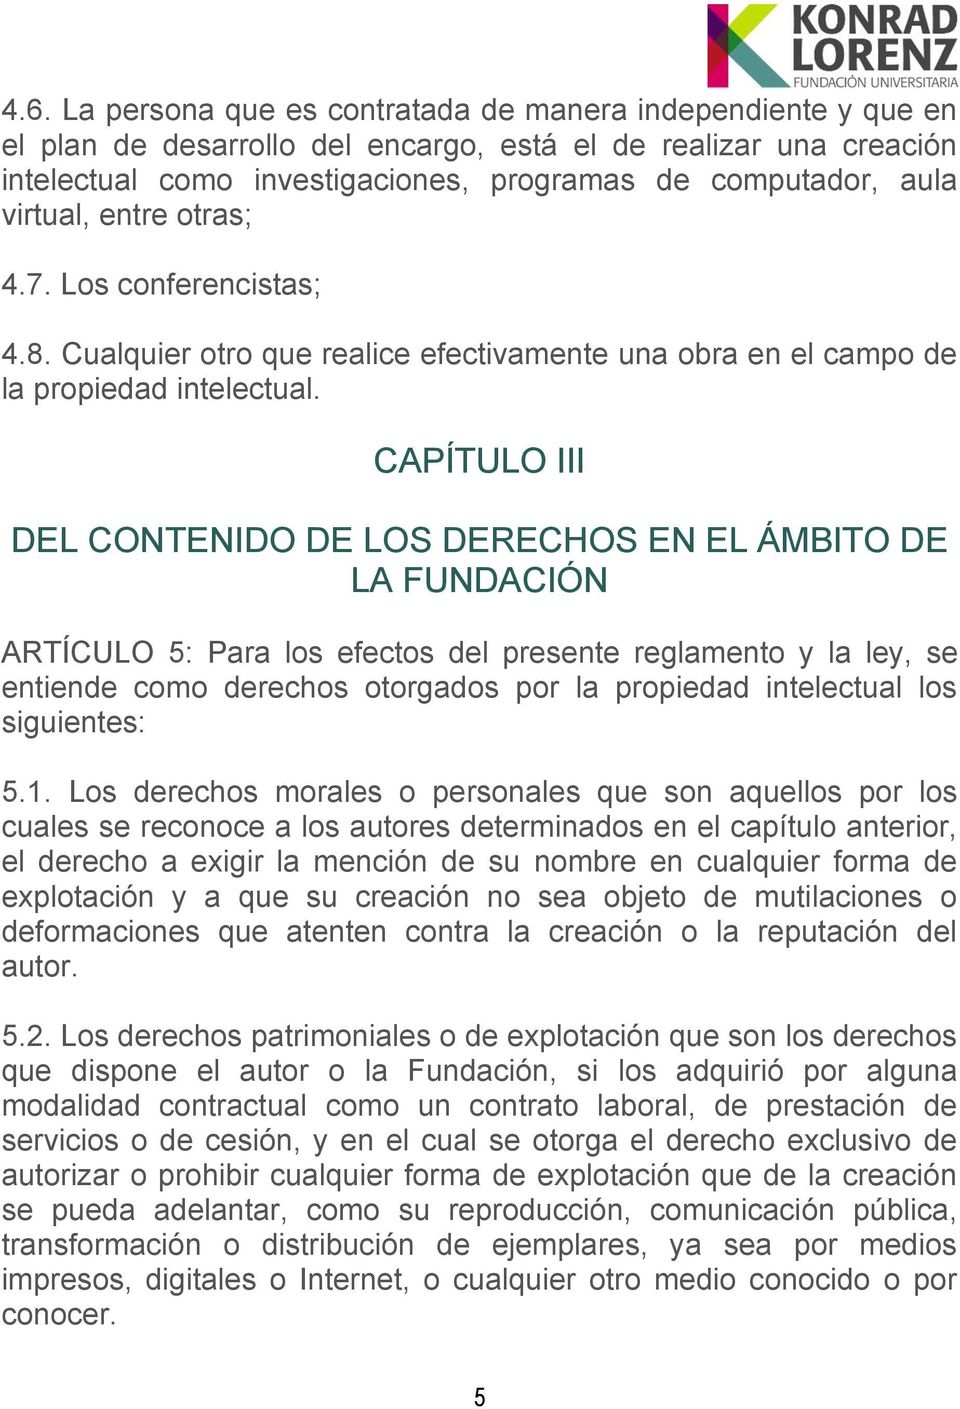 CAPÍTULO III DEL CONTENIDO DE LOS DERECHOS EN EL ÁMBITO DE LA FUNDACIÓN ARTÍCULO 5: Para los efectos del presente reglamento y la ley, se entiende como derechos otorgados por la propiedad intelectual